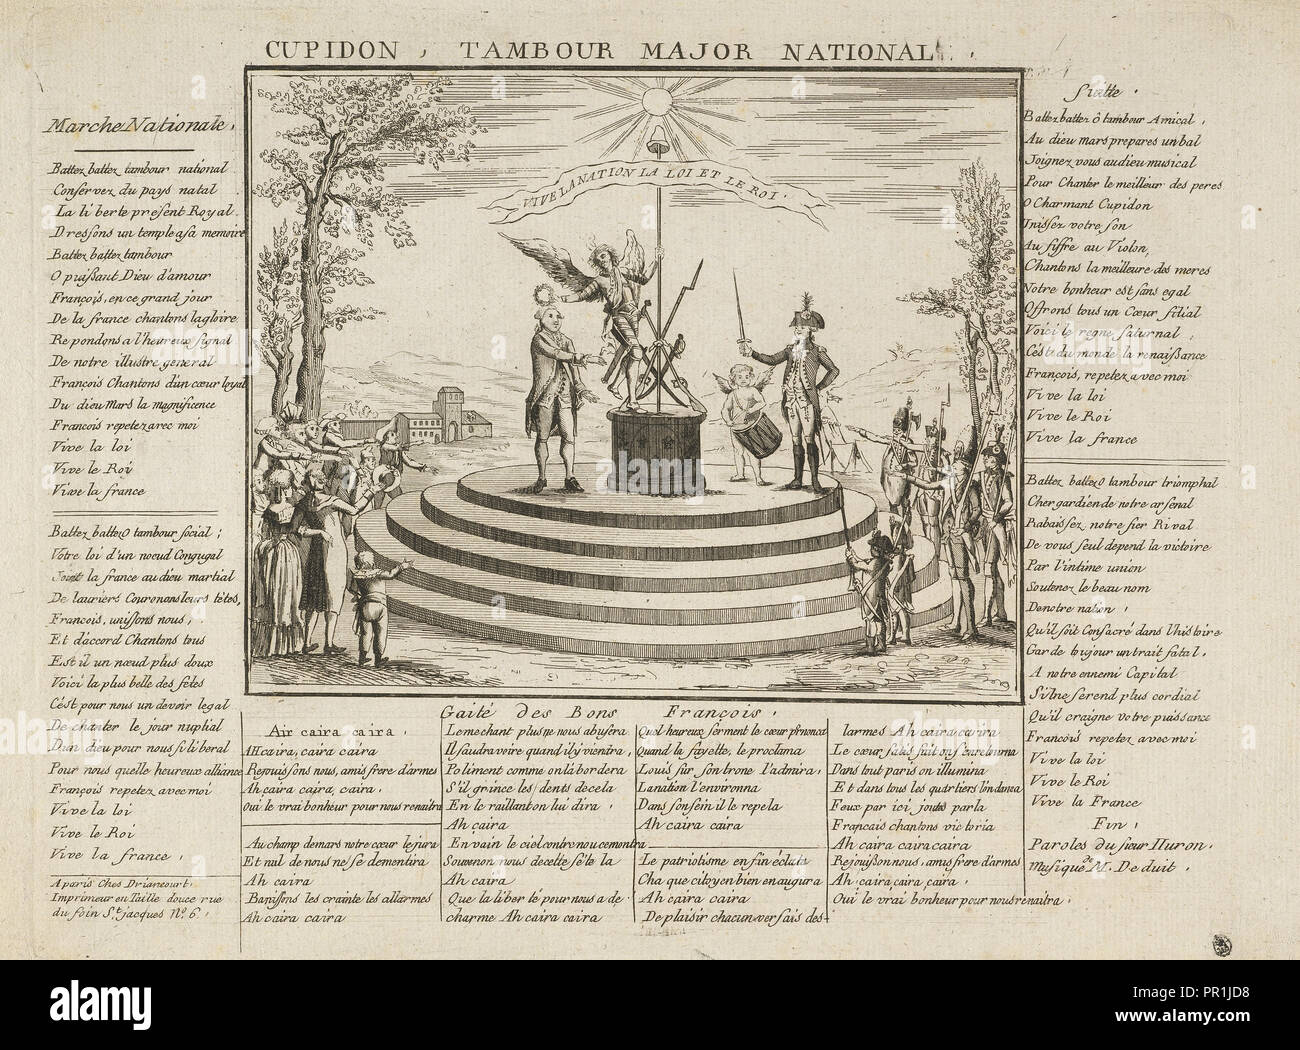 Cupidon, tamburo di grande rilievo nazionale, stampe della rivoluzione francese, 1774-ca. 1840, attacco chimico, in bianco e nero, ca. 1790 Foto Stock